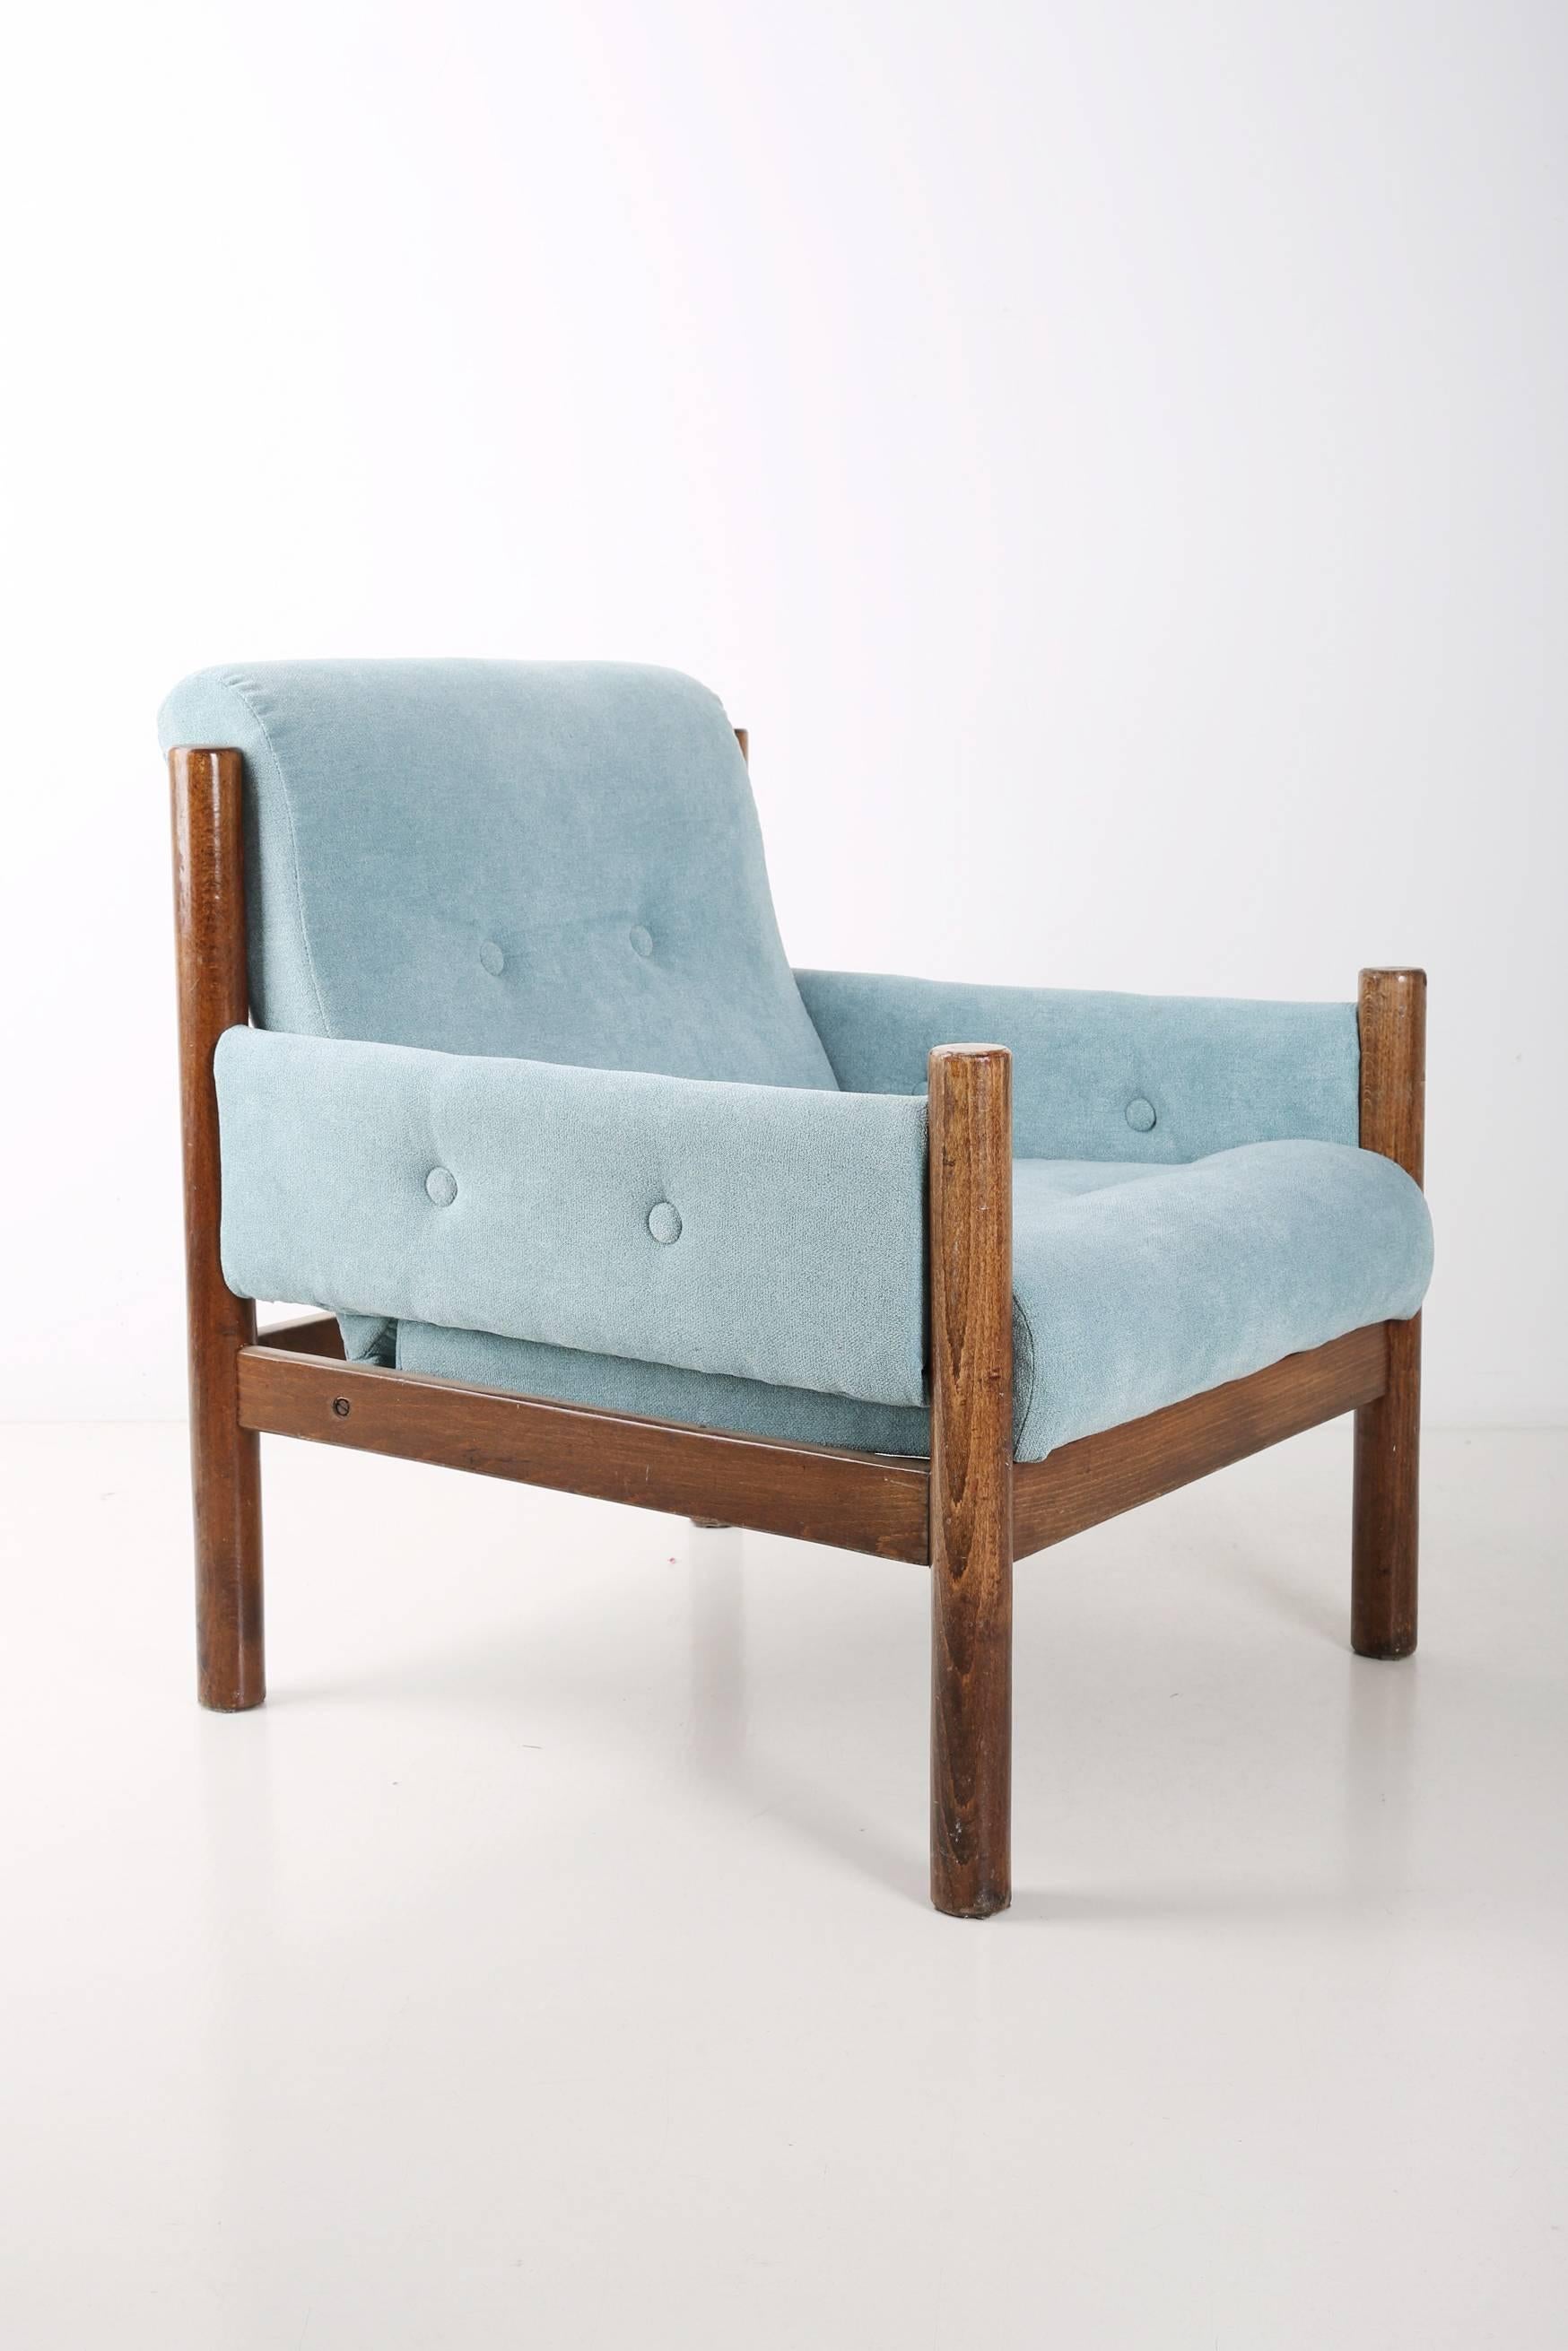 Un merveilleux petit fauteuil fabriqué dans les années 1960 en Pologne. Un design stable du mobilier et un siège confortable. Meubles après rénovation complète de la tapisserie, boiseries rafraîchies. L'ensemble est recouvert d'un tissu épais de